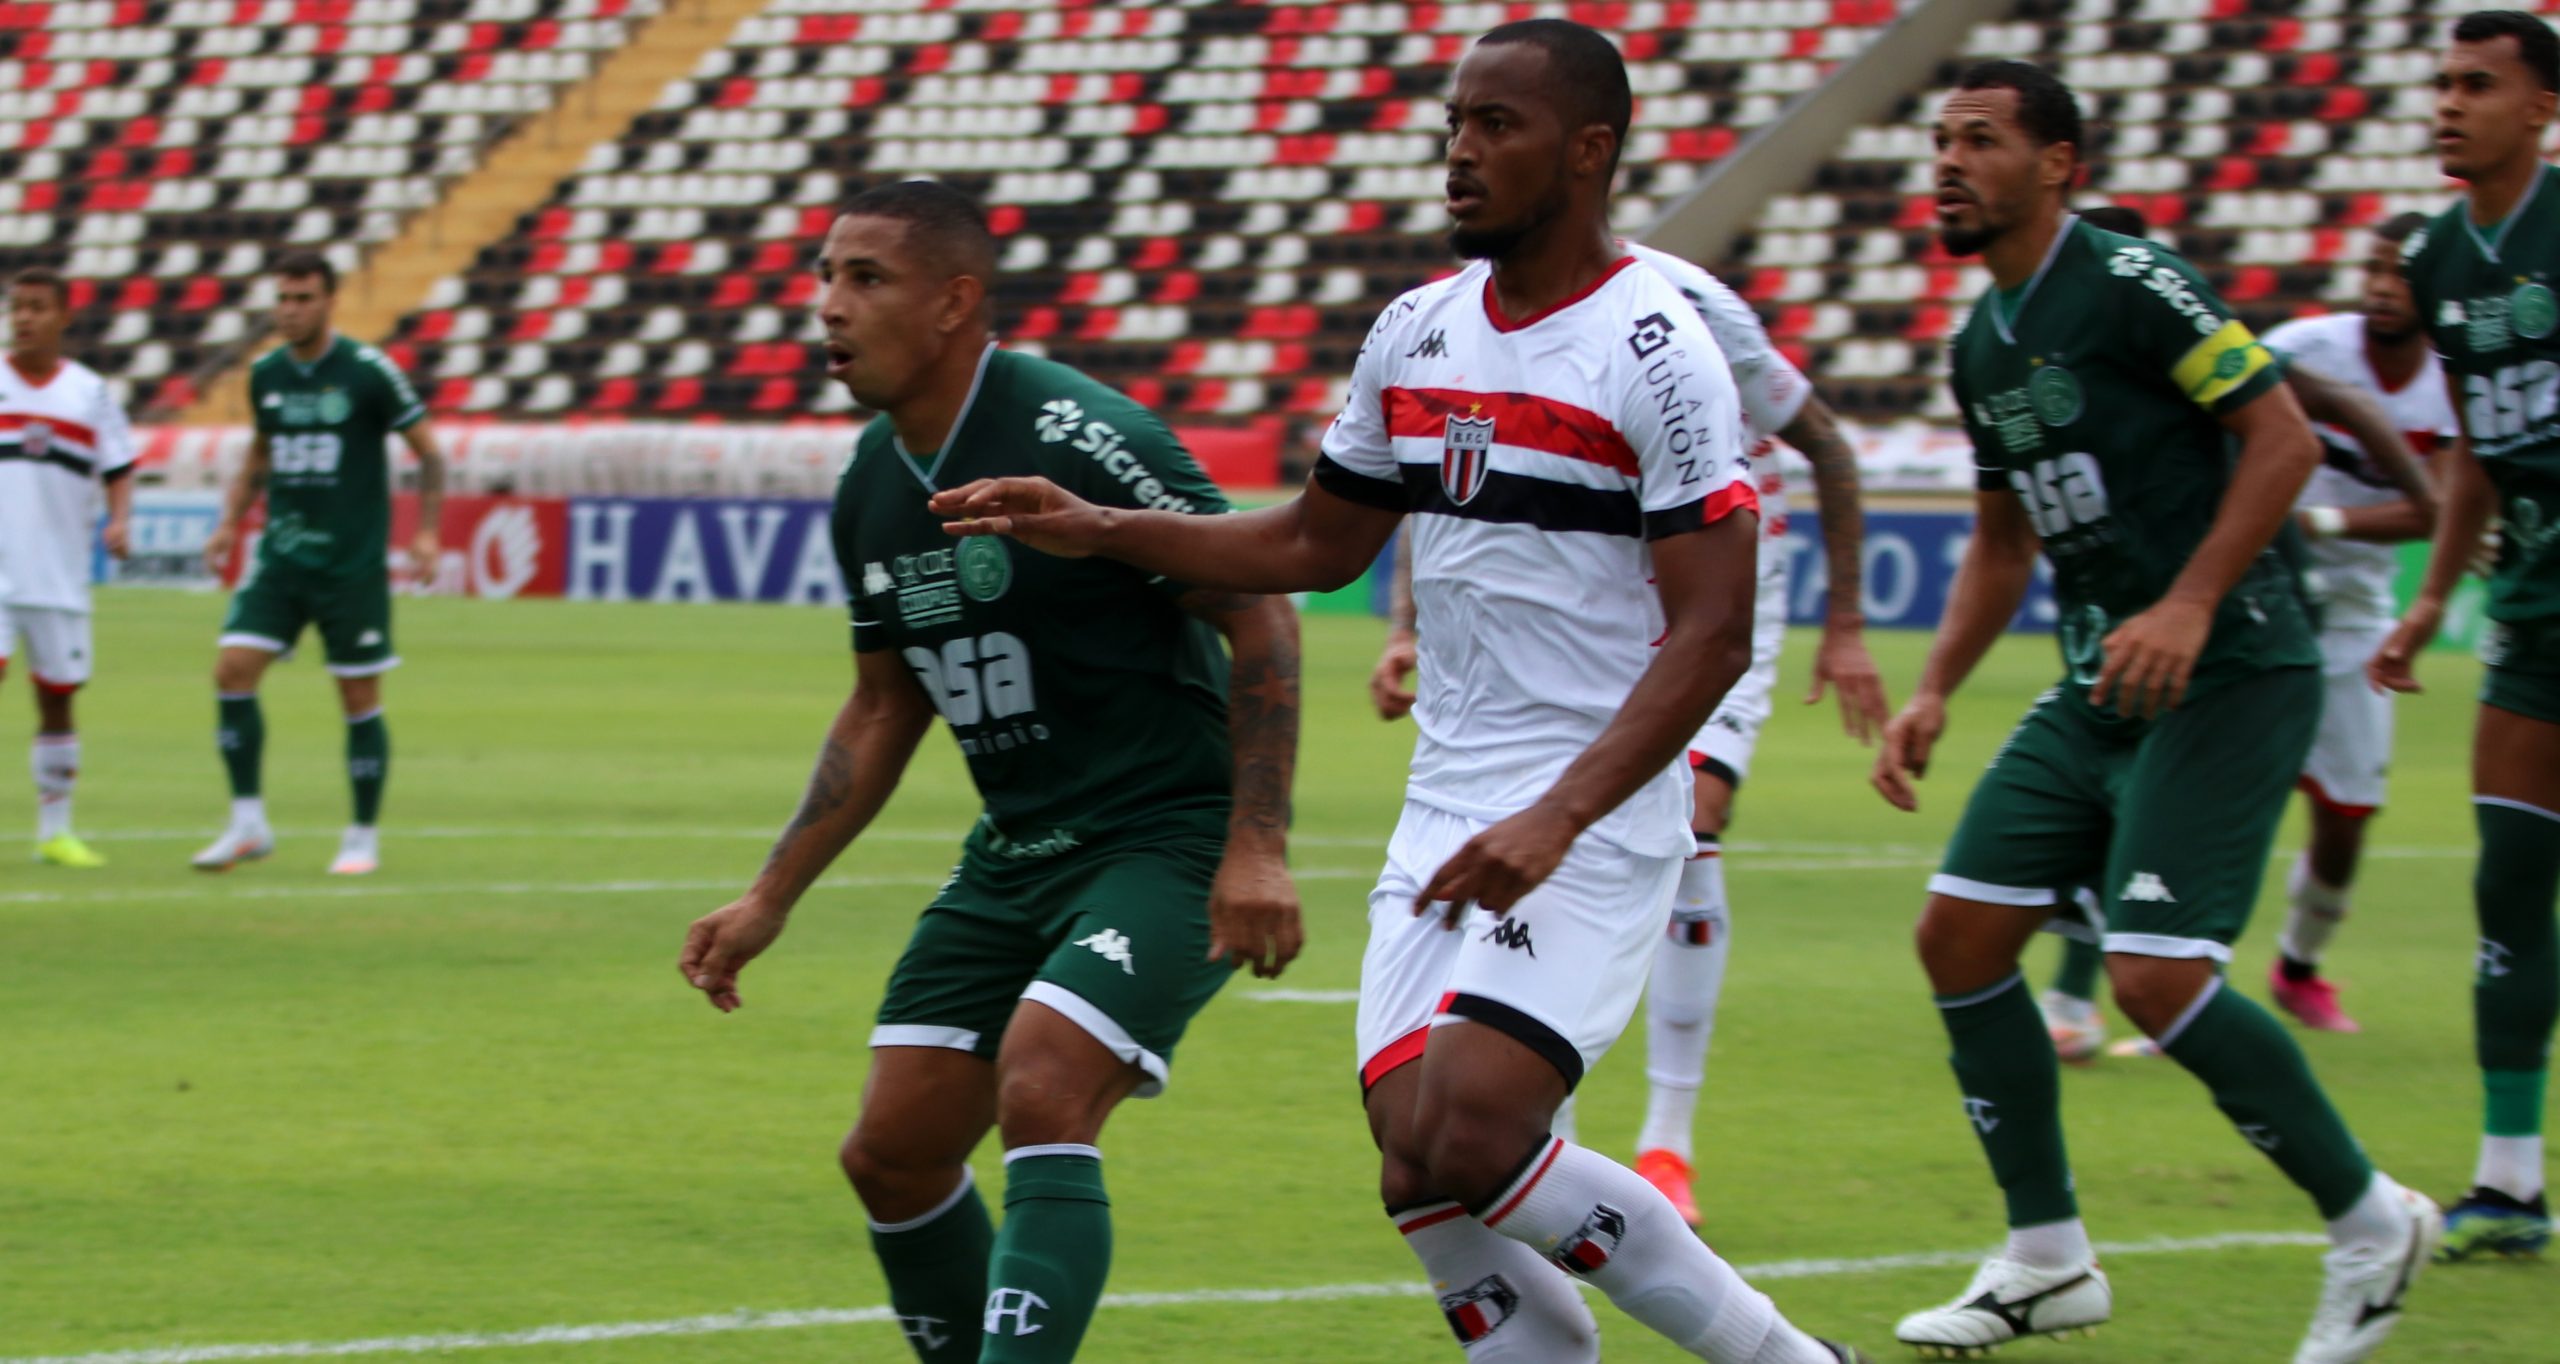 Guarani vence Botafogo-SP por 1 a 0 e se recupera no Paulistão